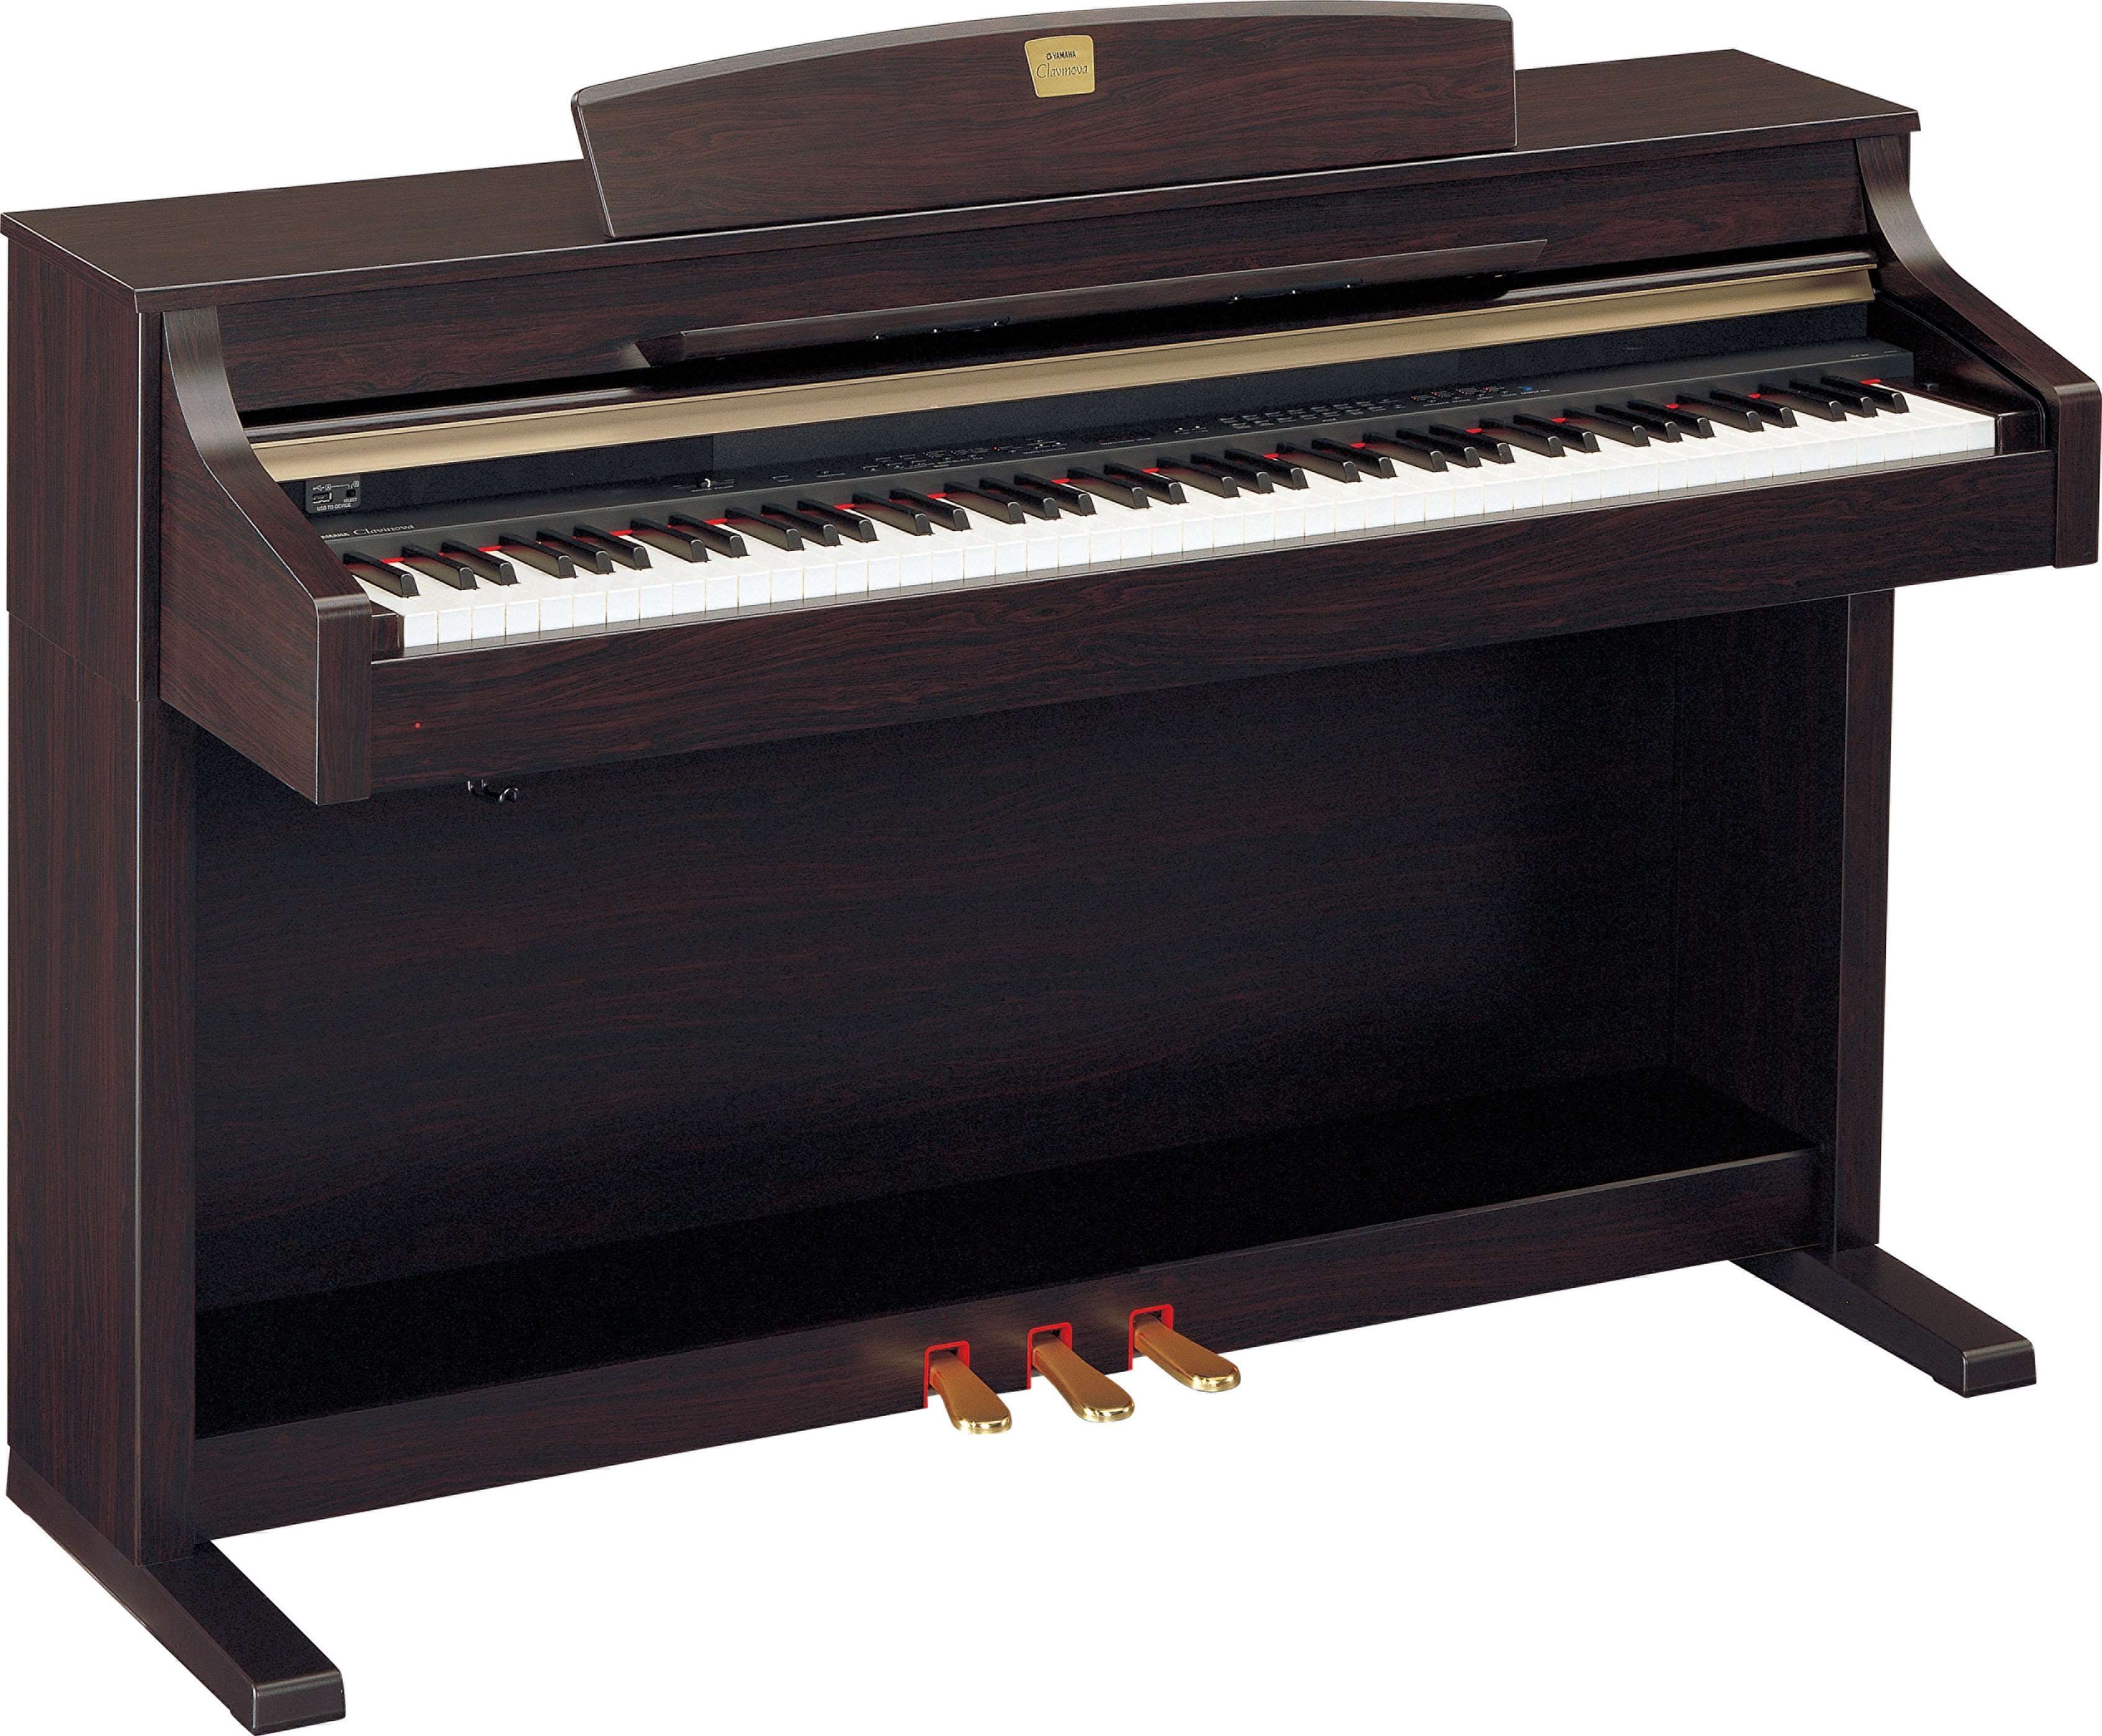 ヤマハ CLP-340 クラビノーバ 電子ピアノ - 鍵盤楽器、ピアノ